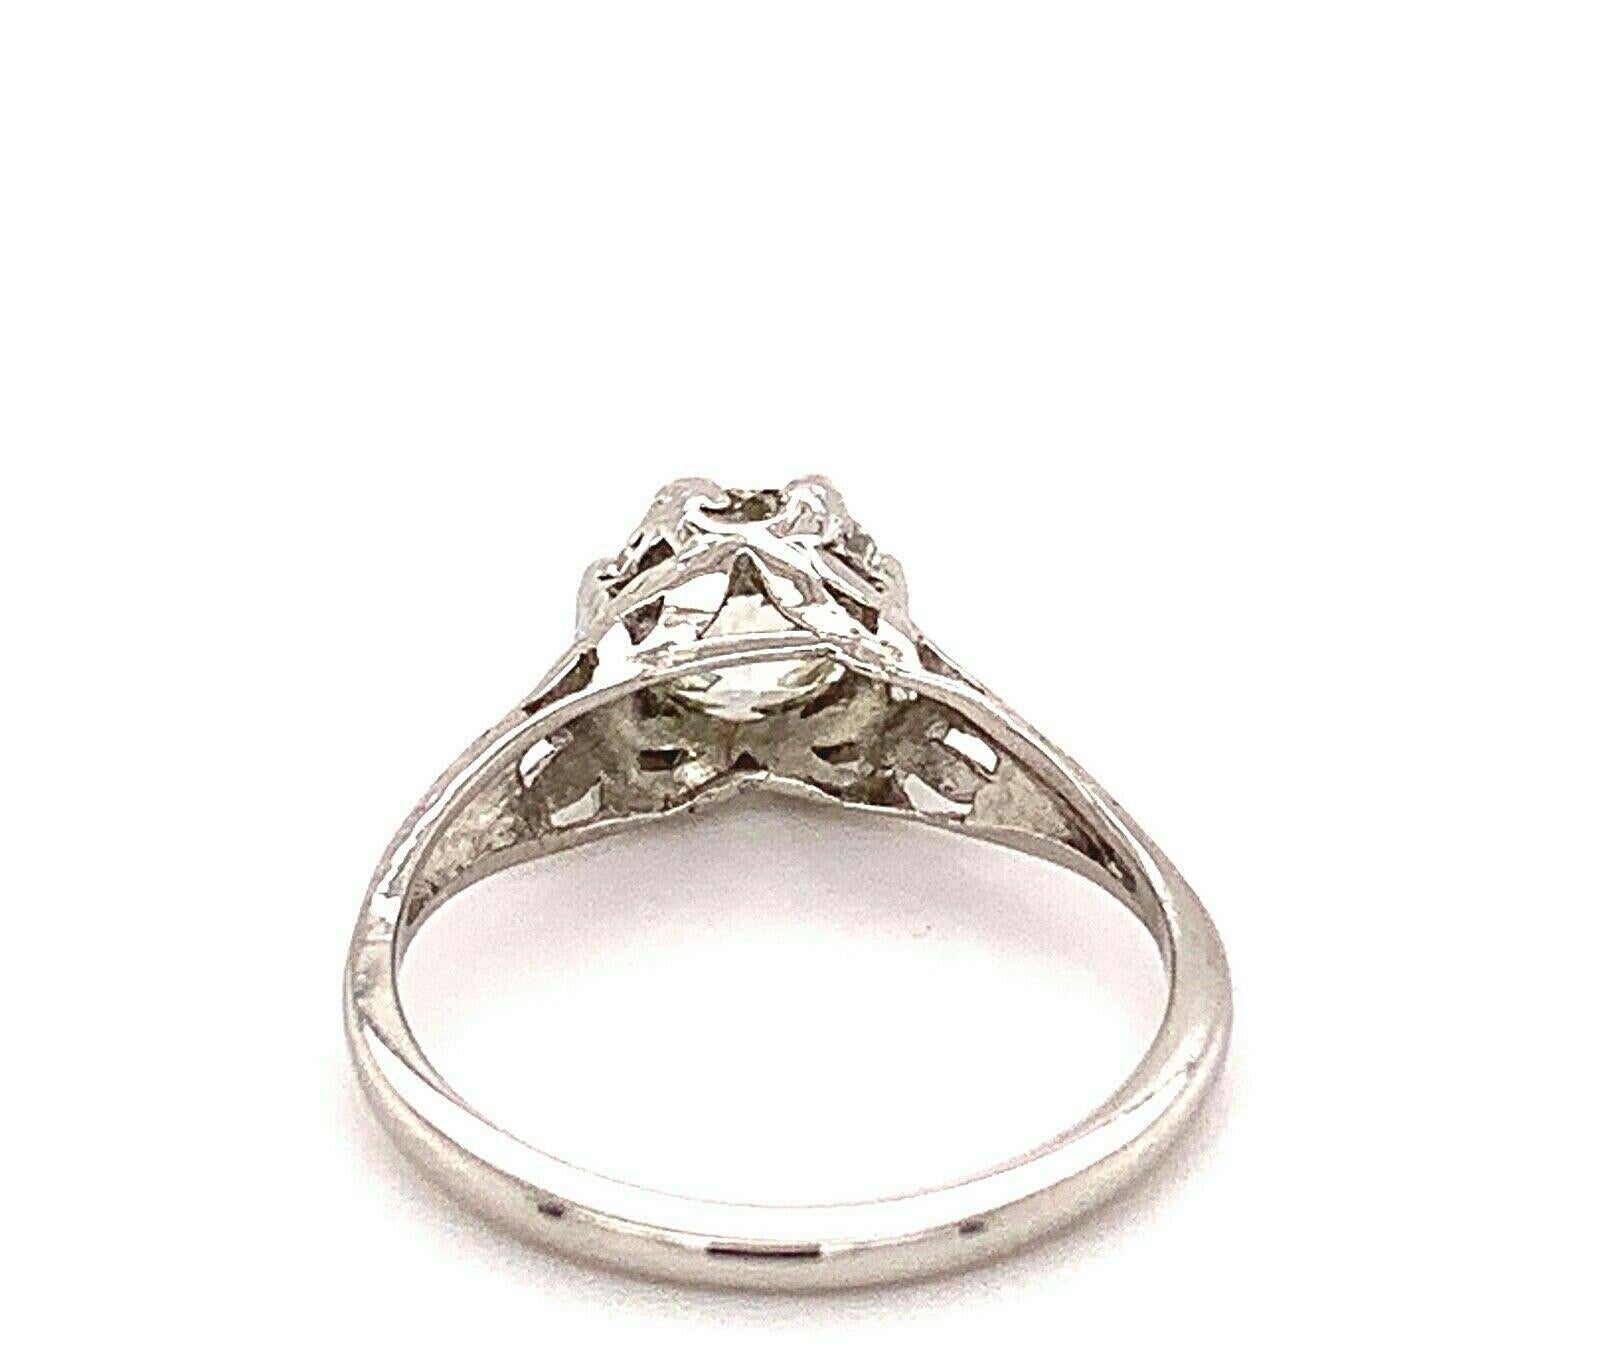 Antique Platinum Old Cut Diamond Engagement Ring 1.01 Carat 3